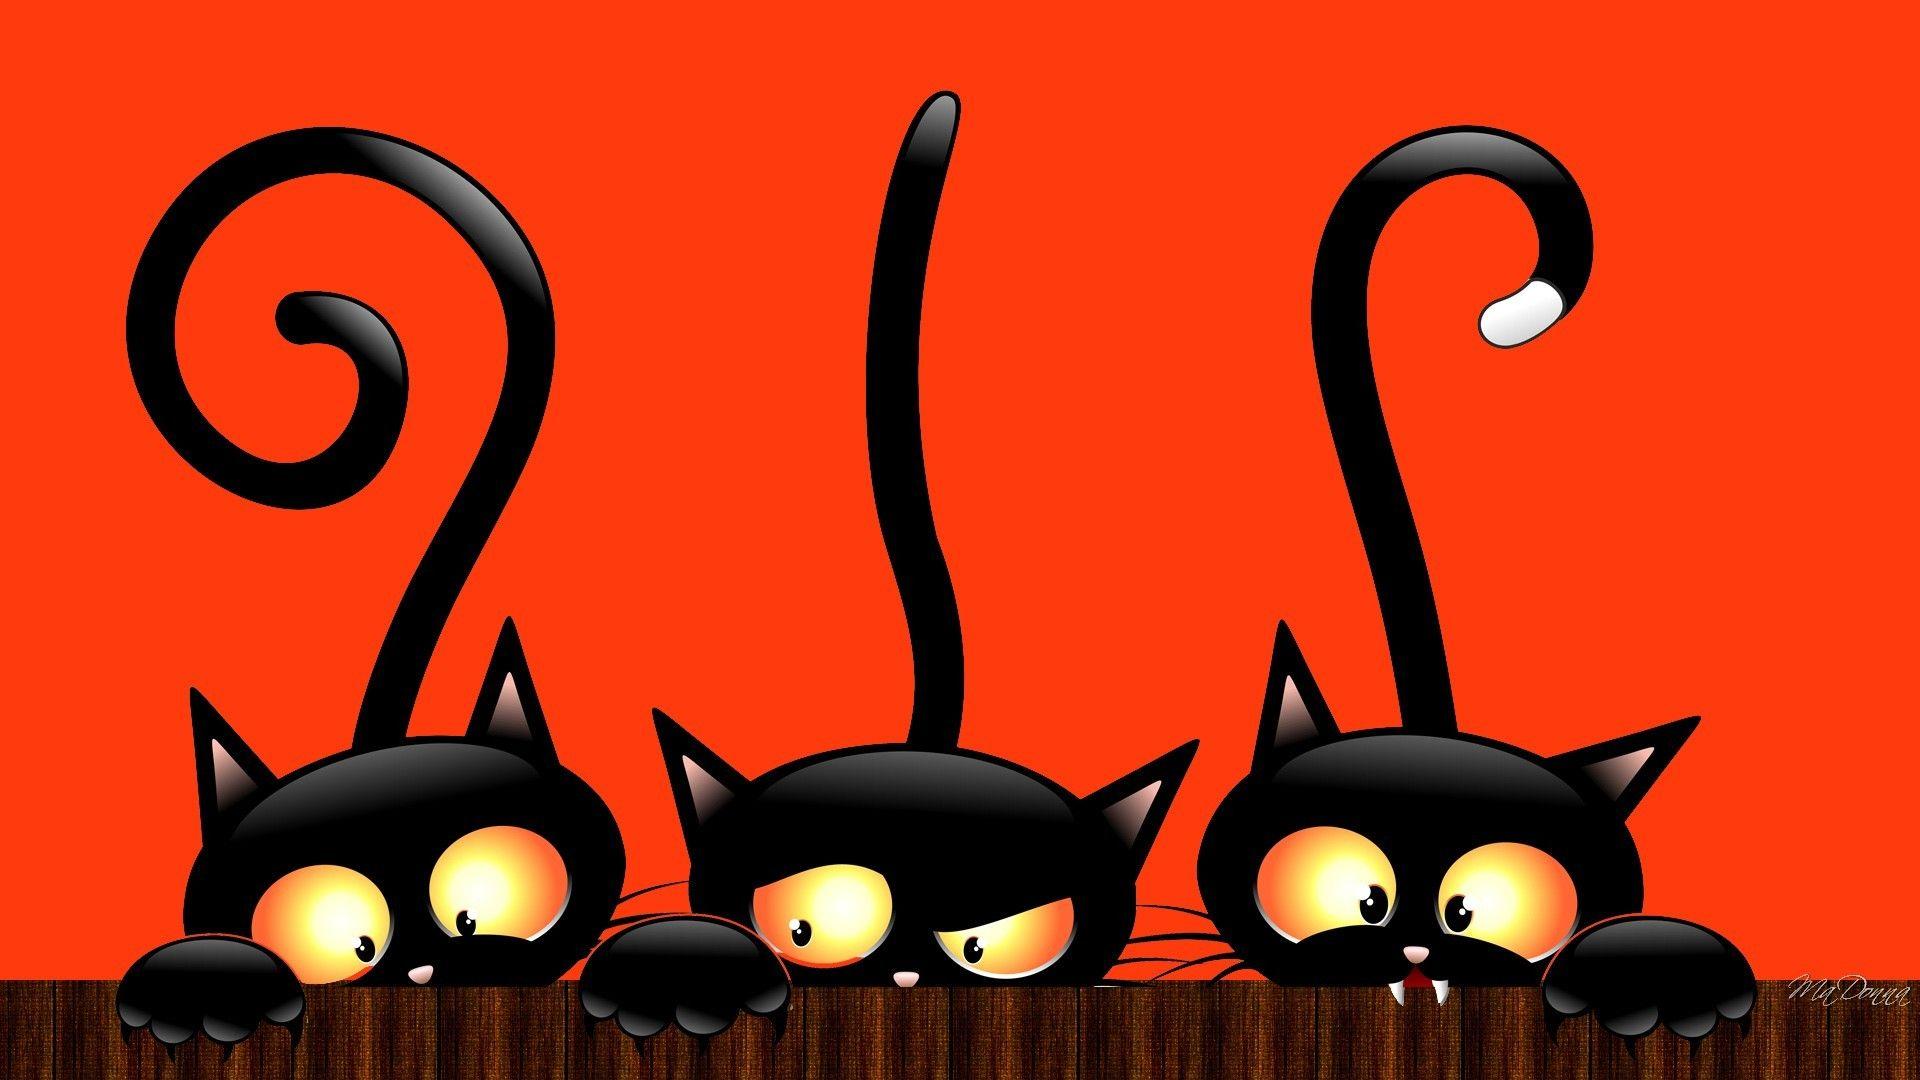 Halloween Cat Wallpapers - Top Free Halloween Cat Backgrounds